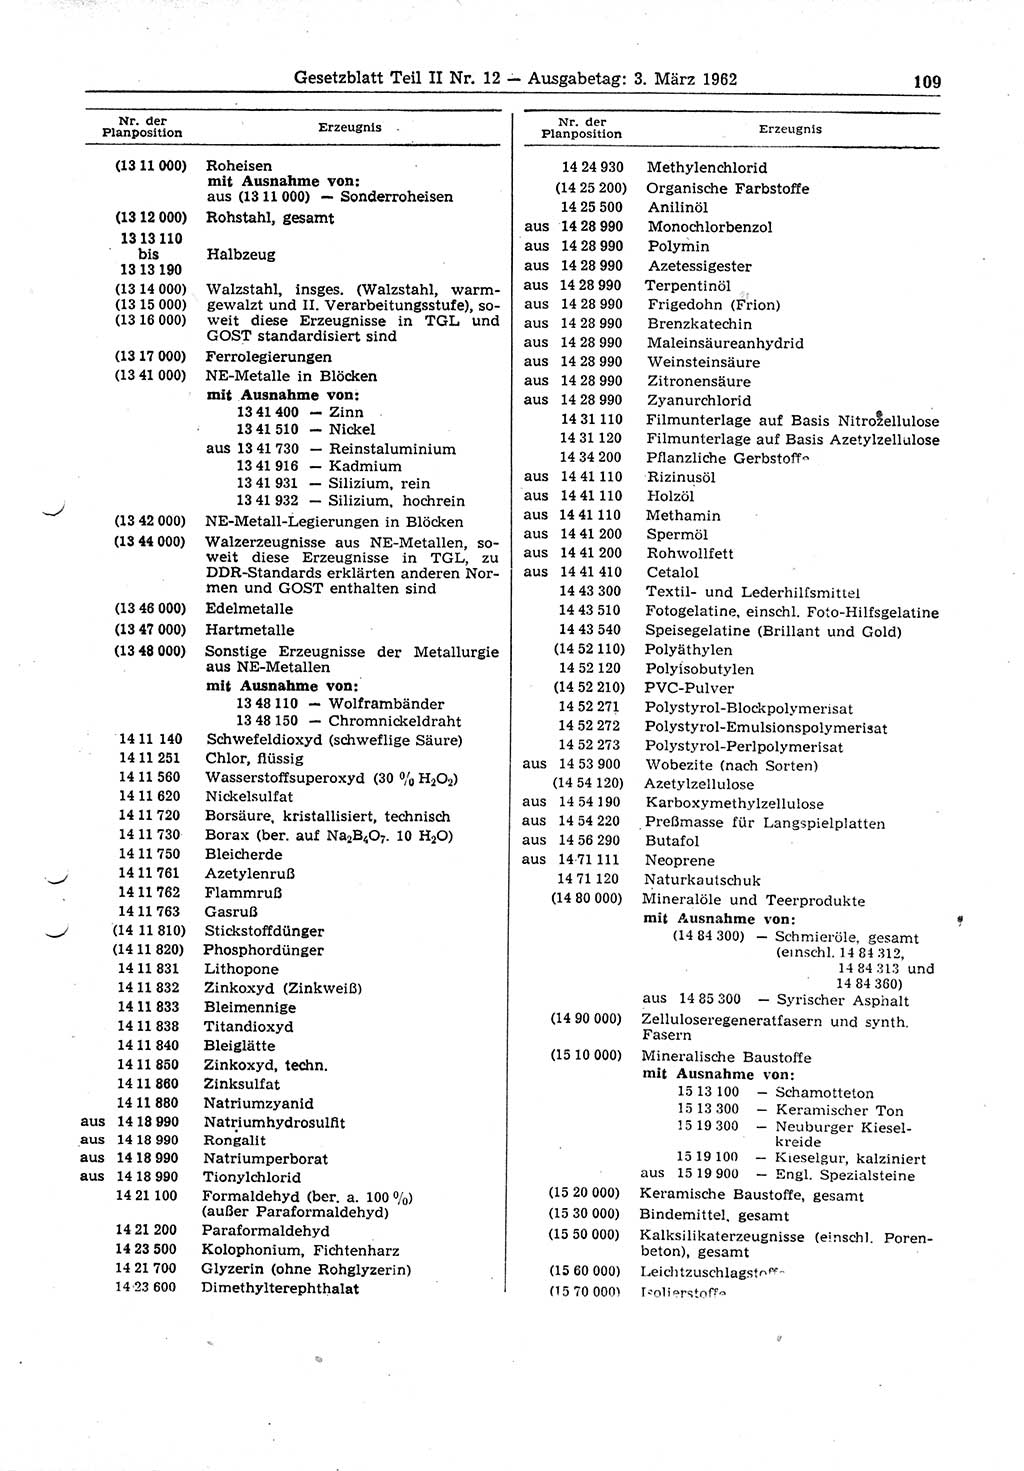 Gesetzblatt (GBl.) der Deutschen Demokratischen Republik (DDR) Teil ⅠⅠ 1962, Seite 109 (GBl. DDR ⅠⅠ 1962, S. 109)